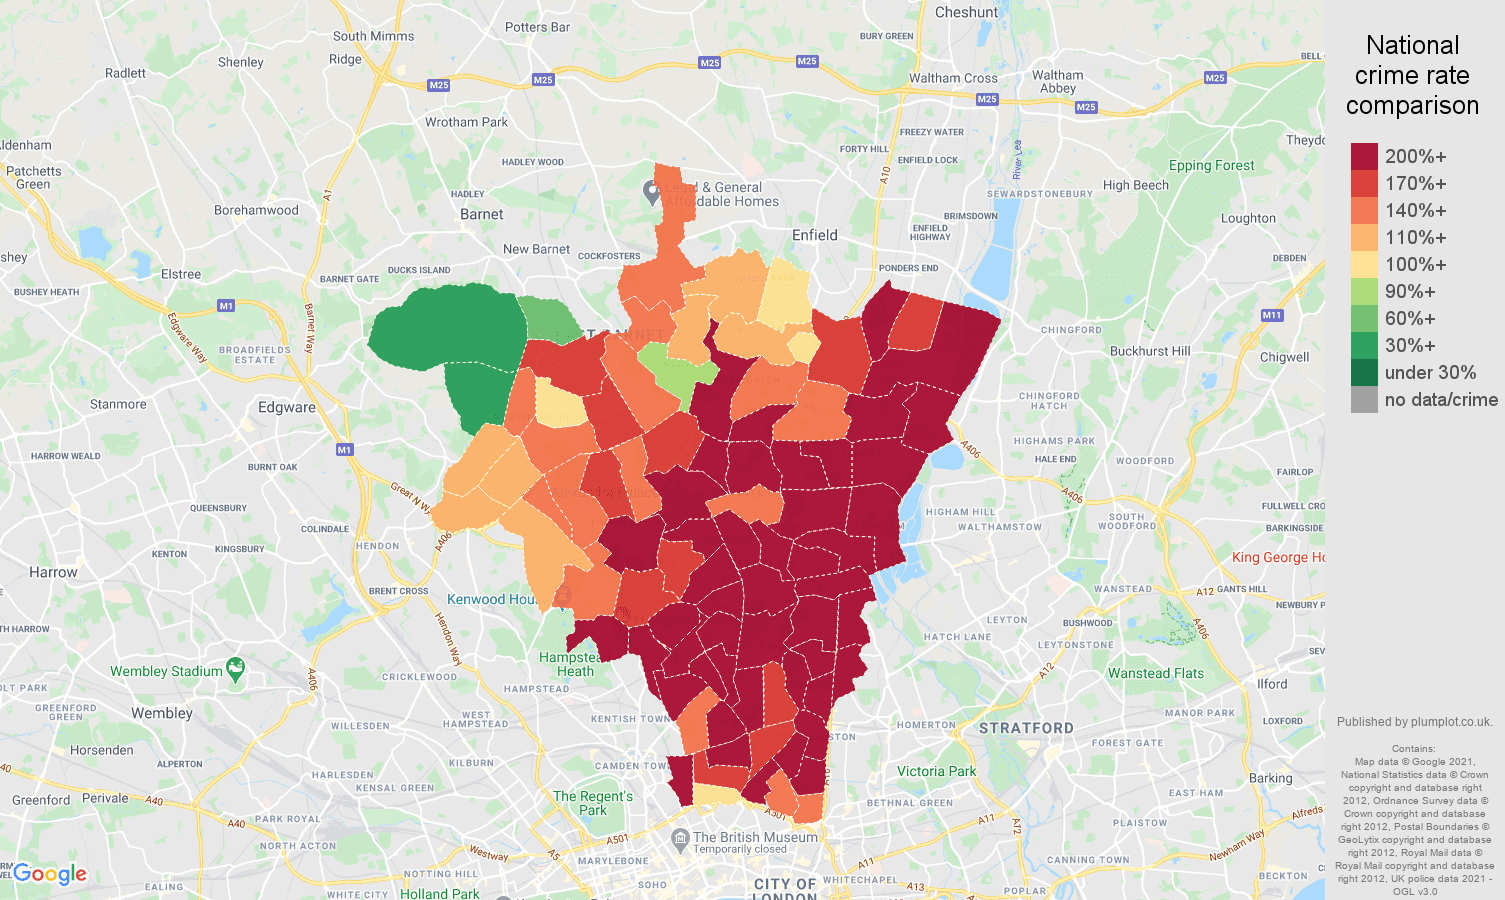 North London antisocial behaviour crime rate comparison map